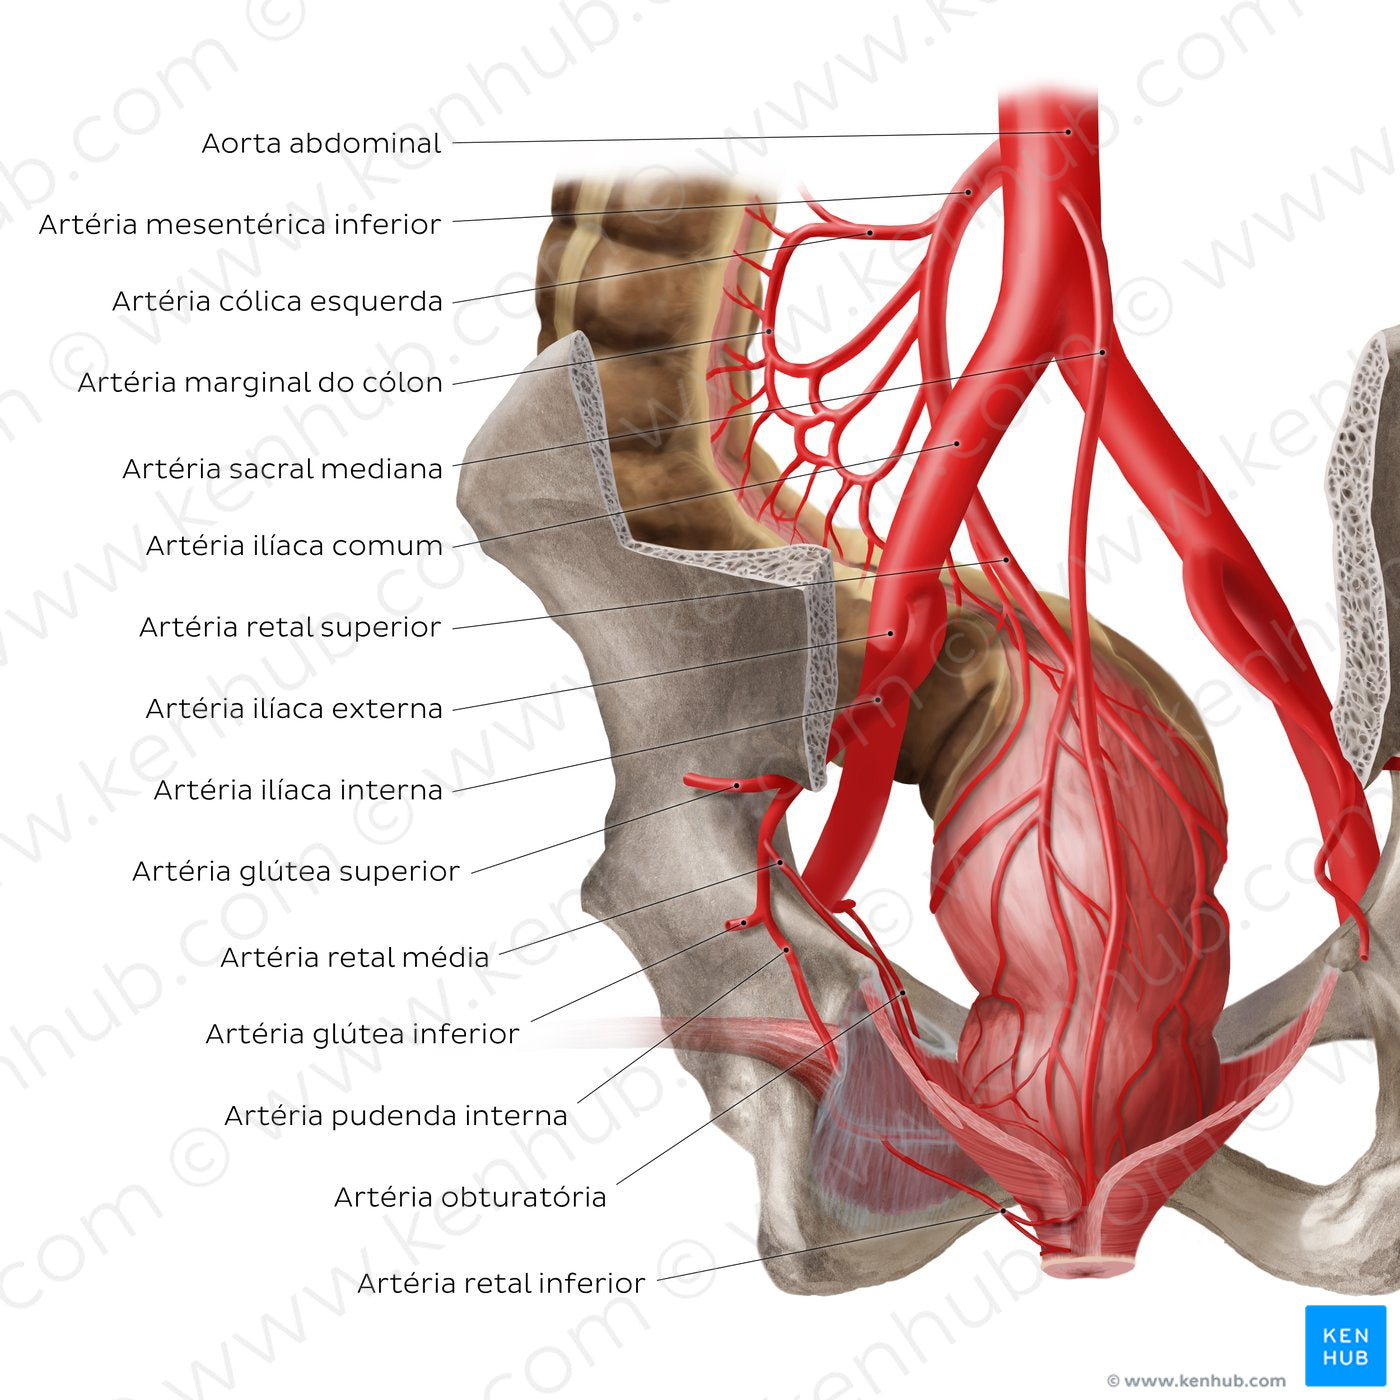 Arteries of the rectum (Portuguese)